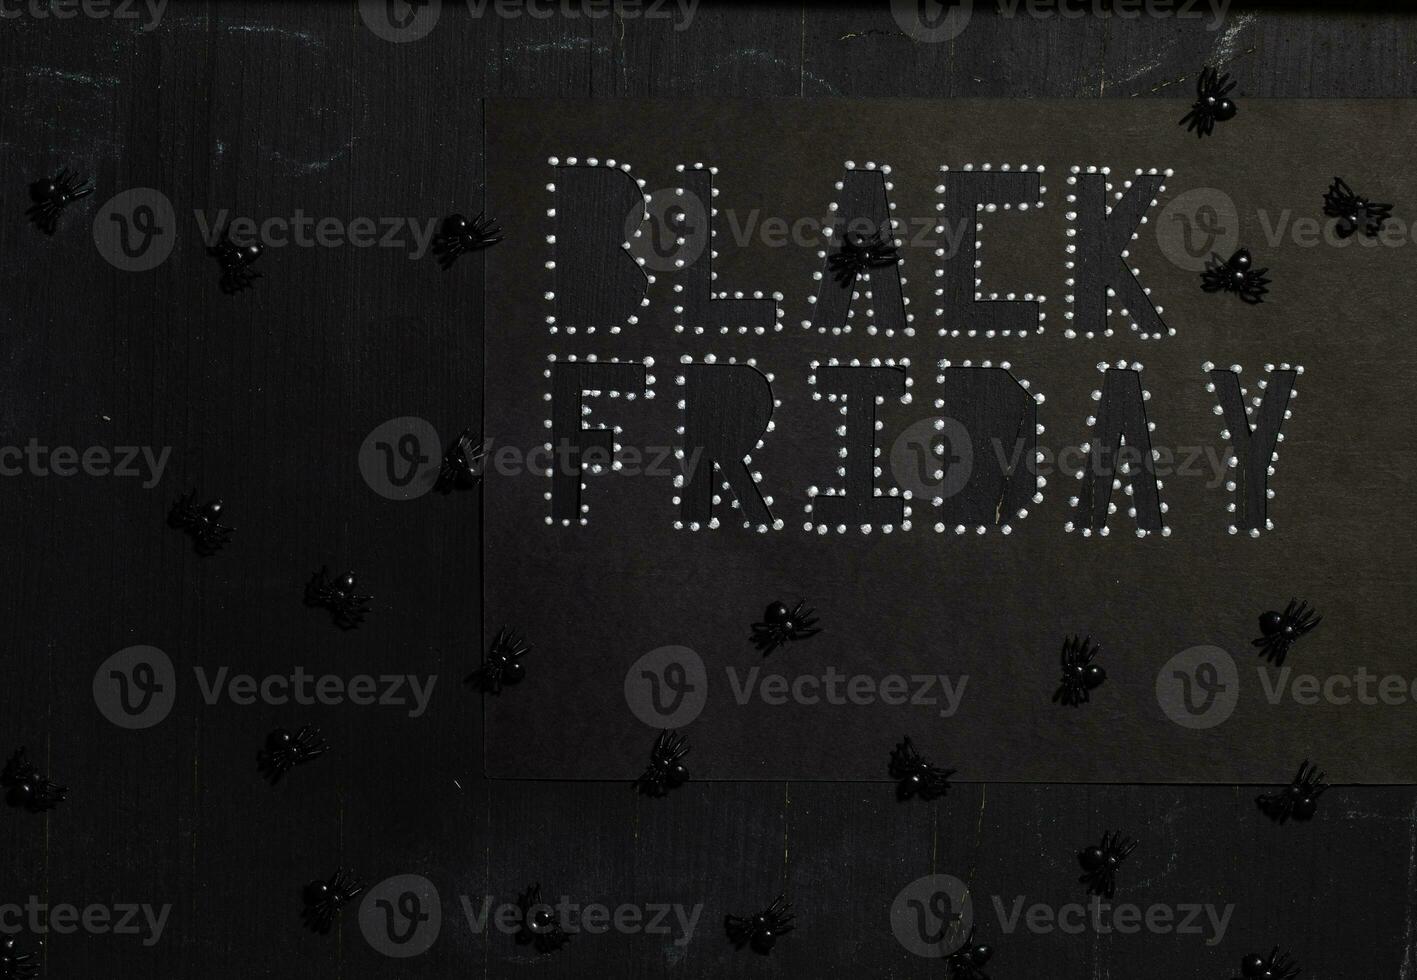 ord svart fredag är skära ut från svart kartong papper. foto